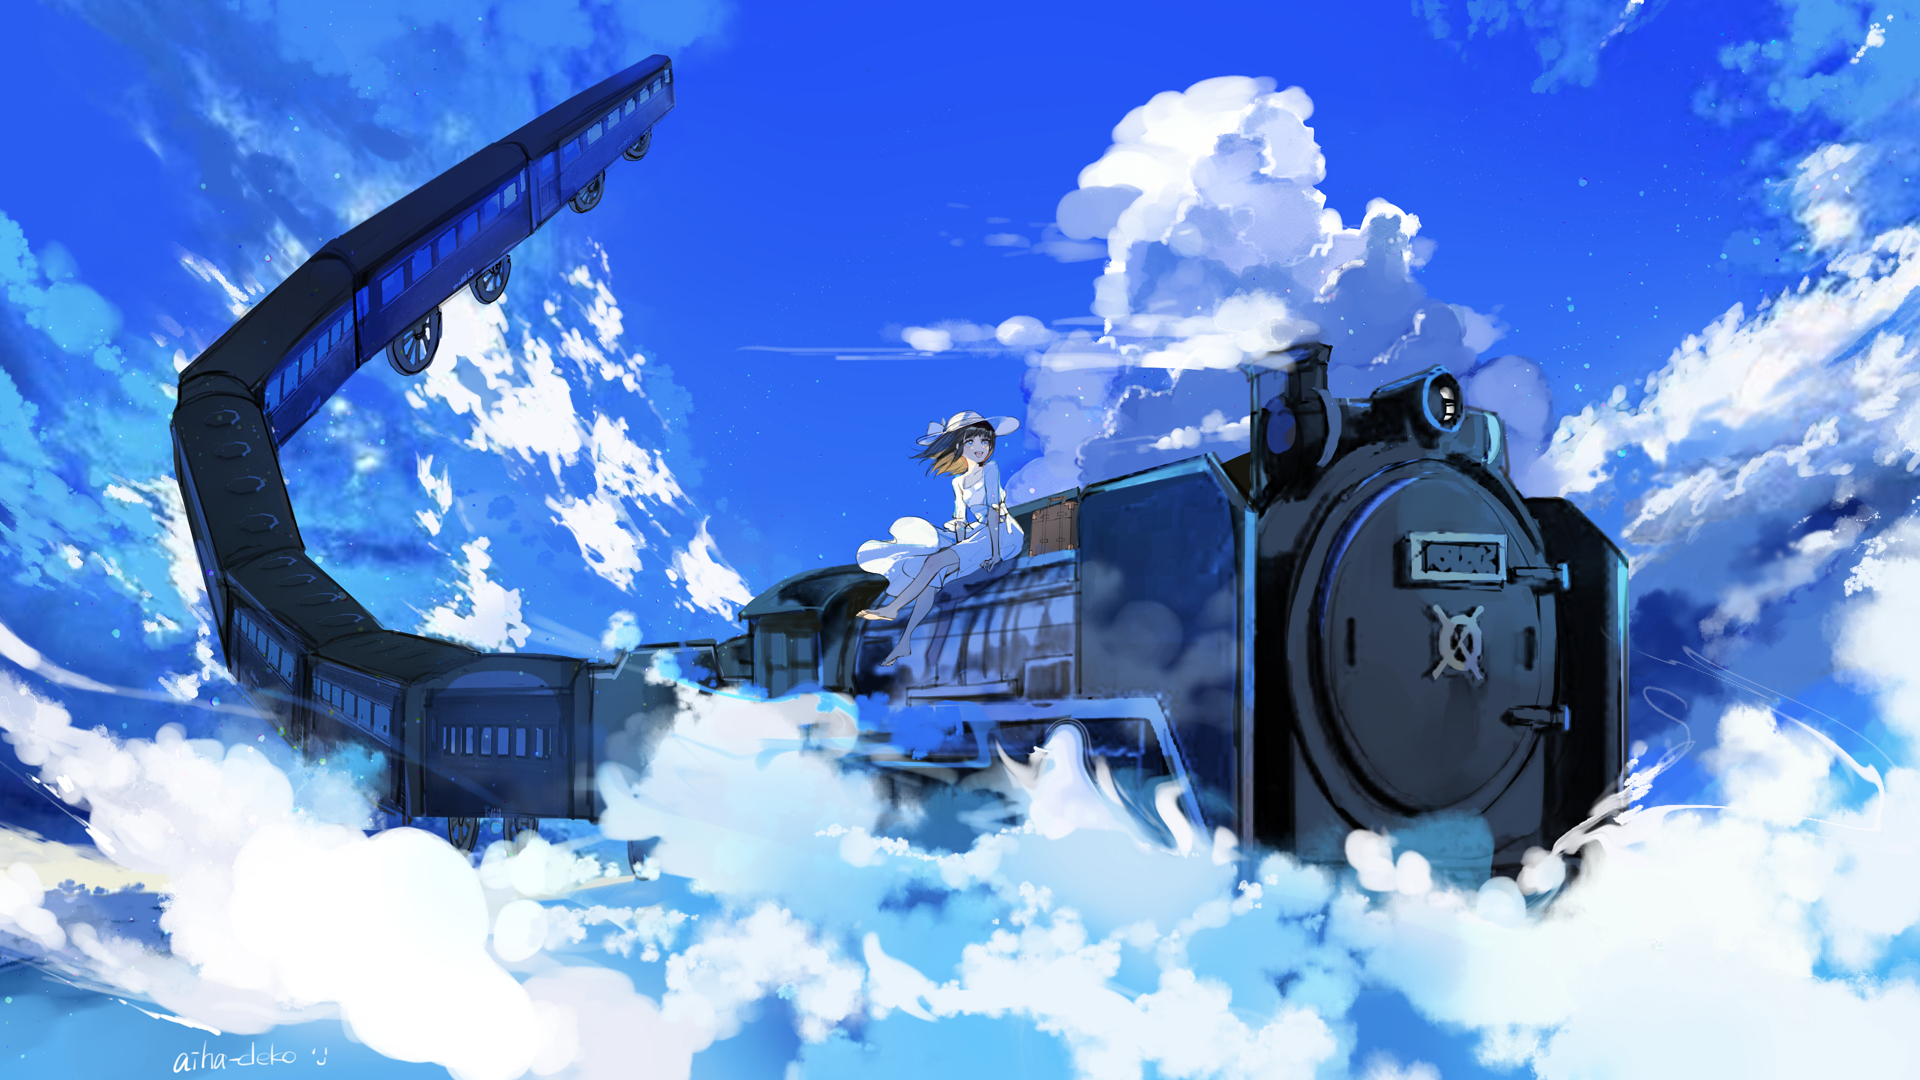 Steam Artwork Anime Girl [Commission] by UGSnake on DeviantArt